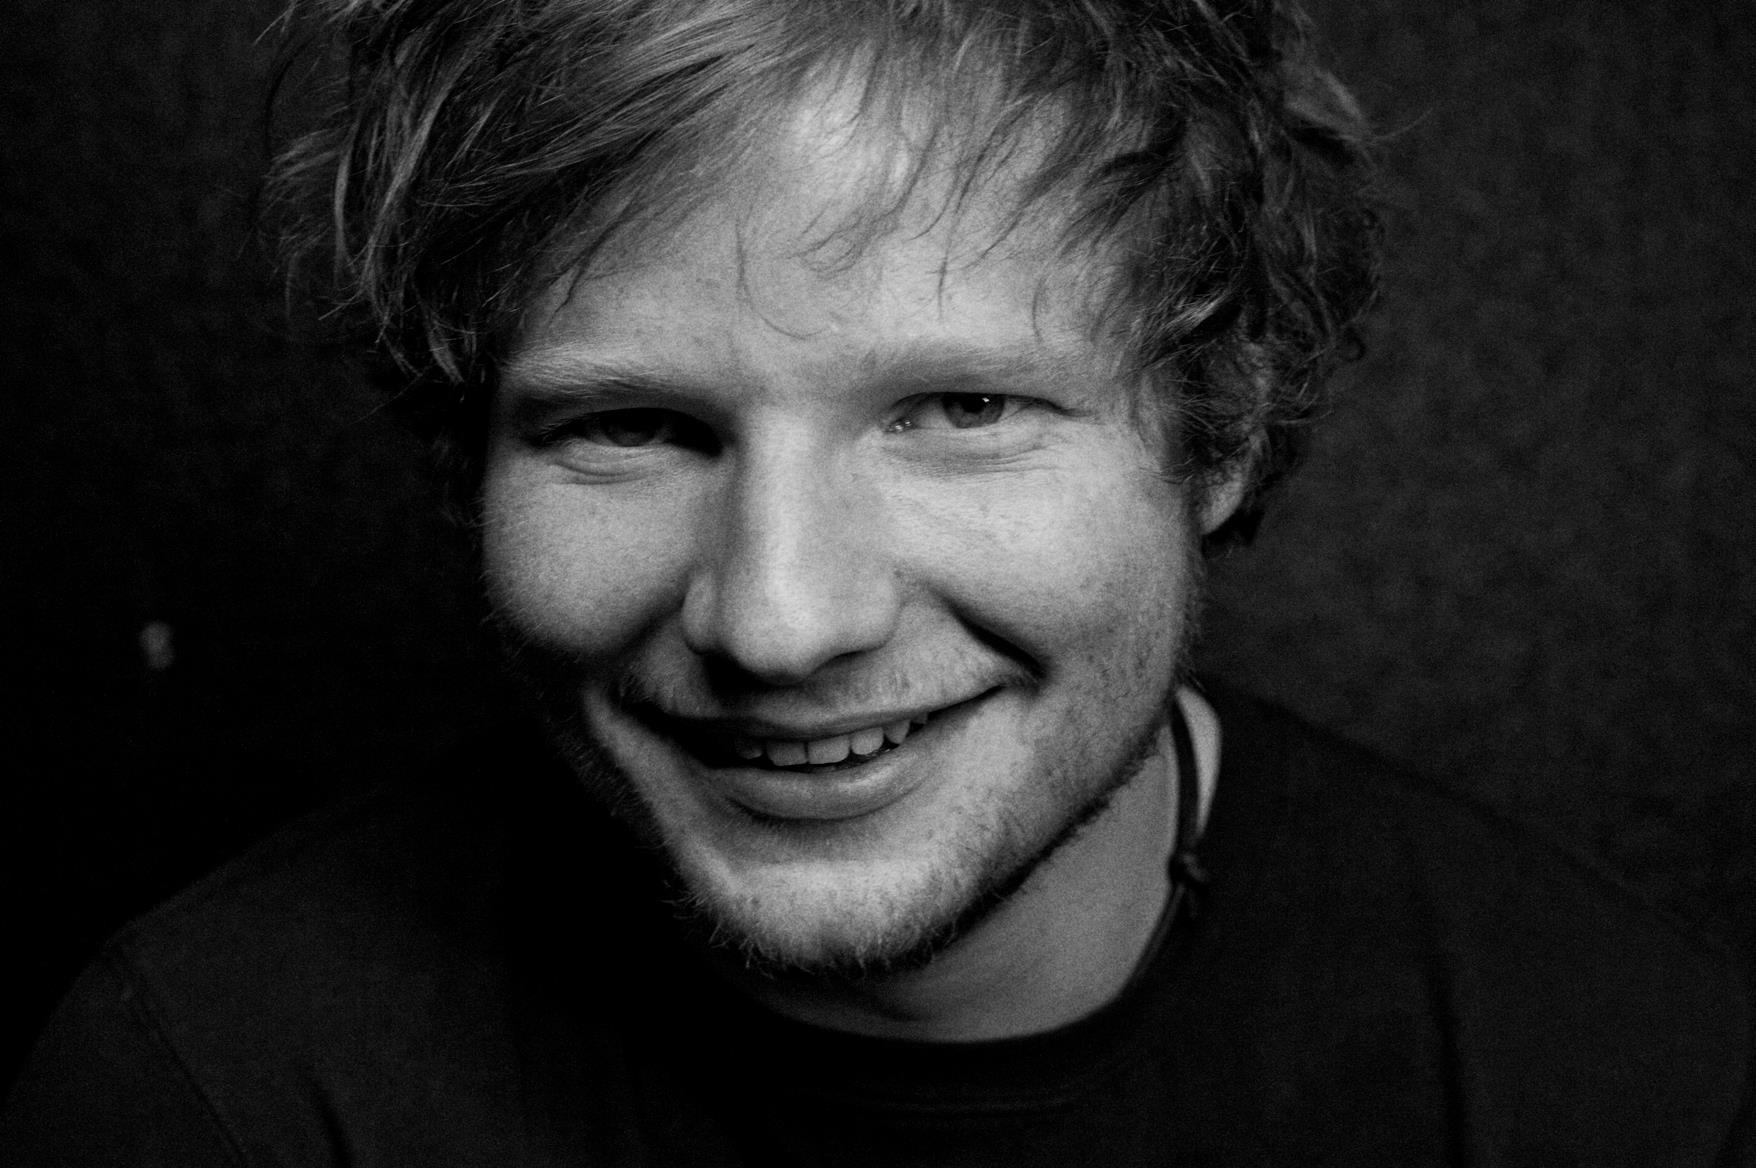 Ed Sheeran Smile Wallpaper HD Mobile #7451 Desktop Computer,Gadget ...